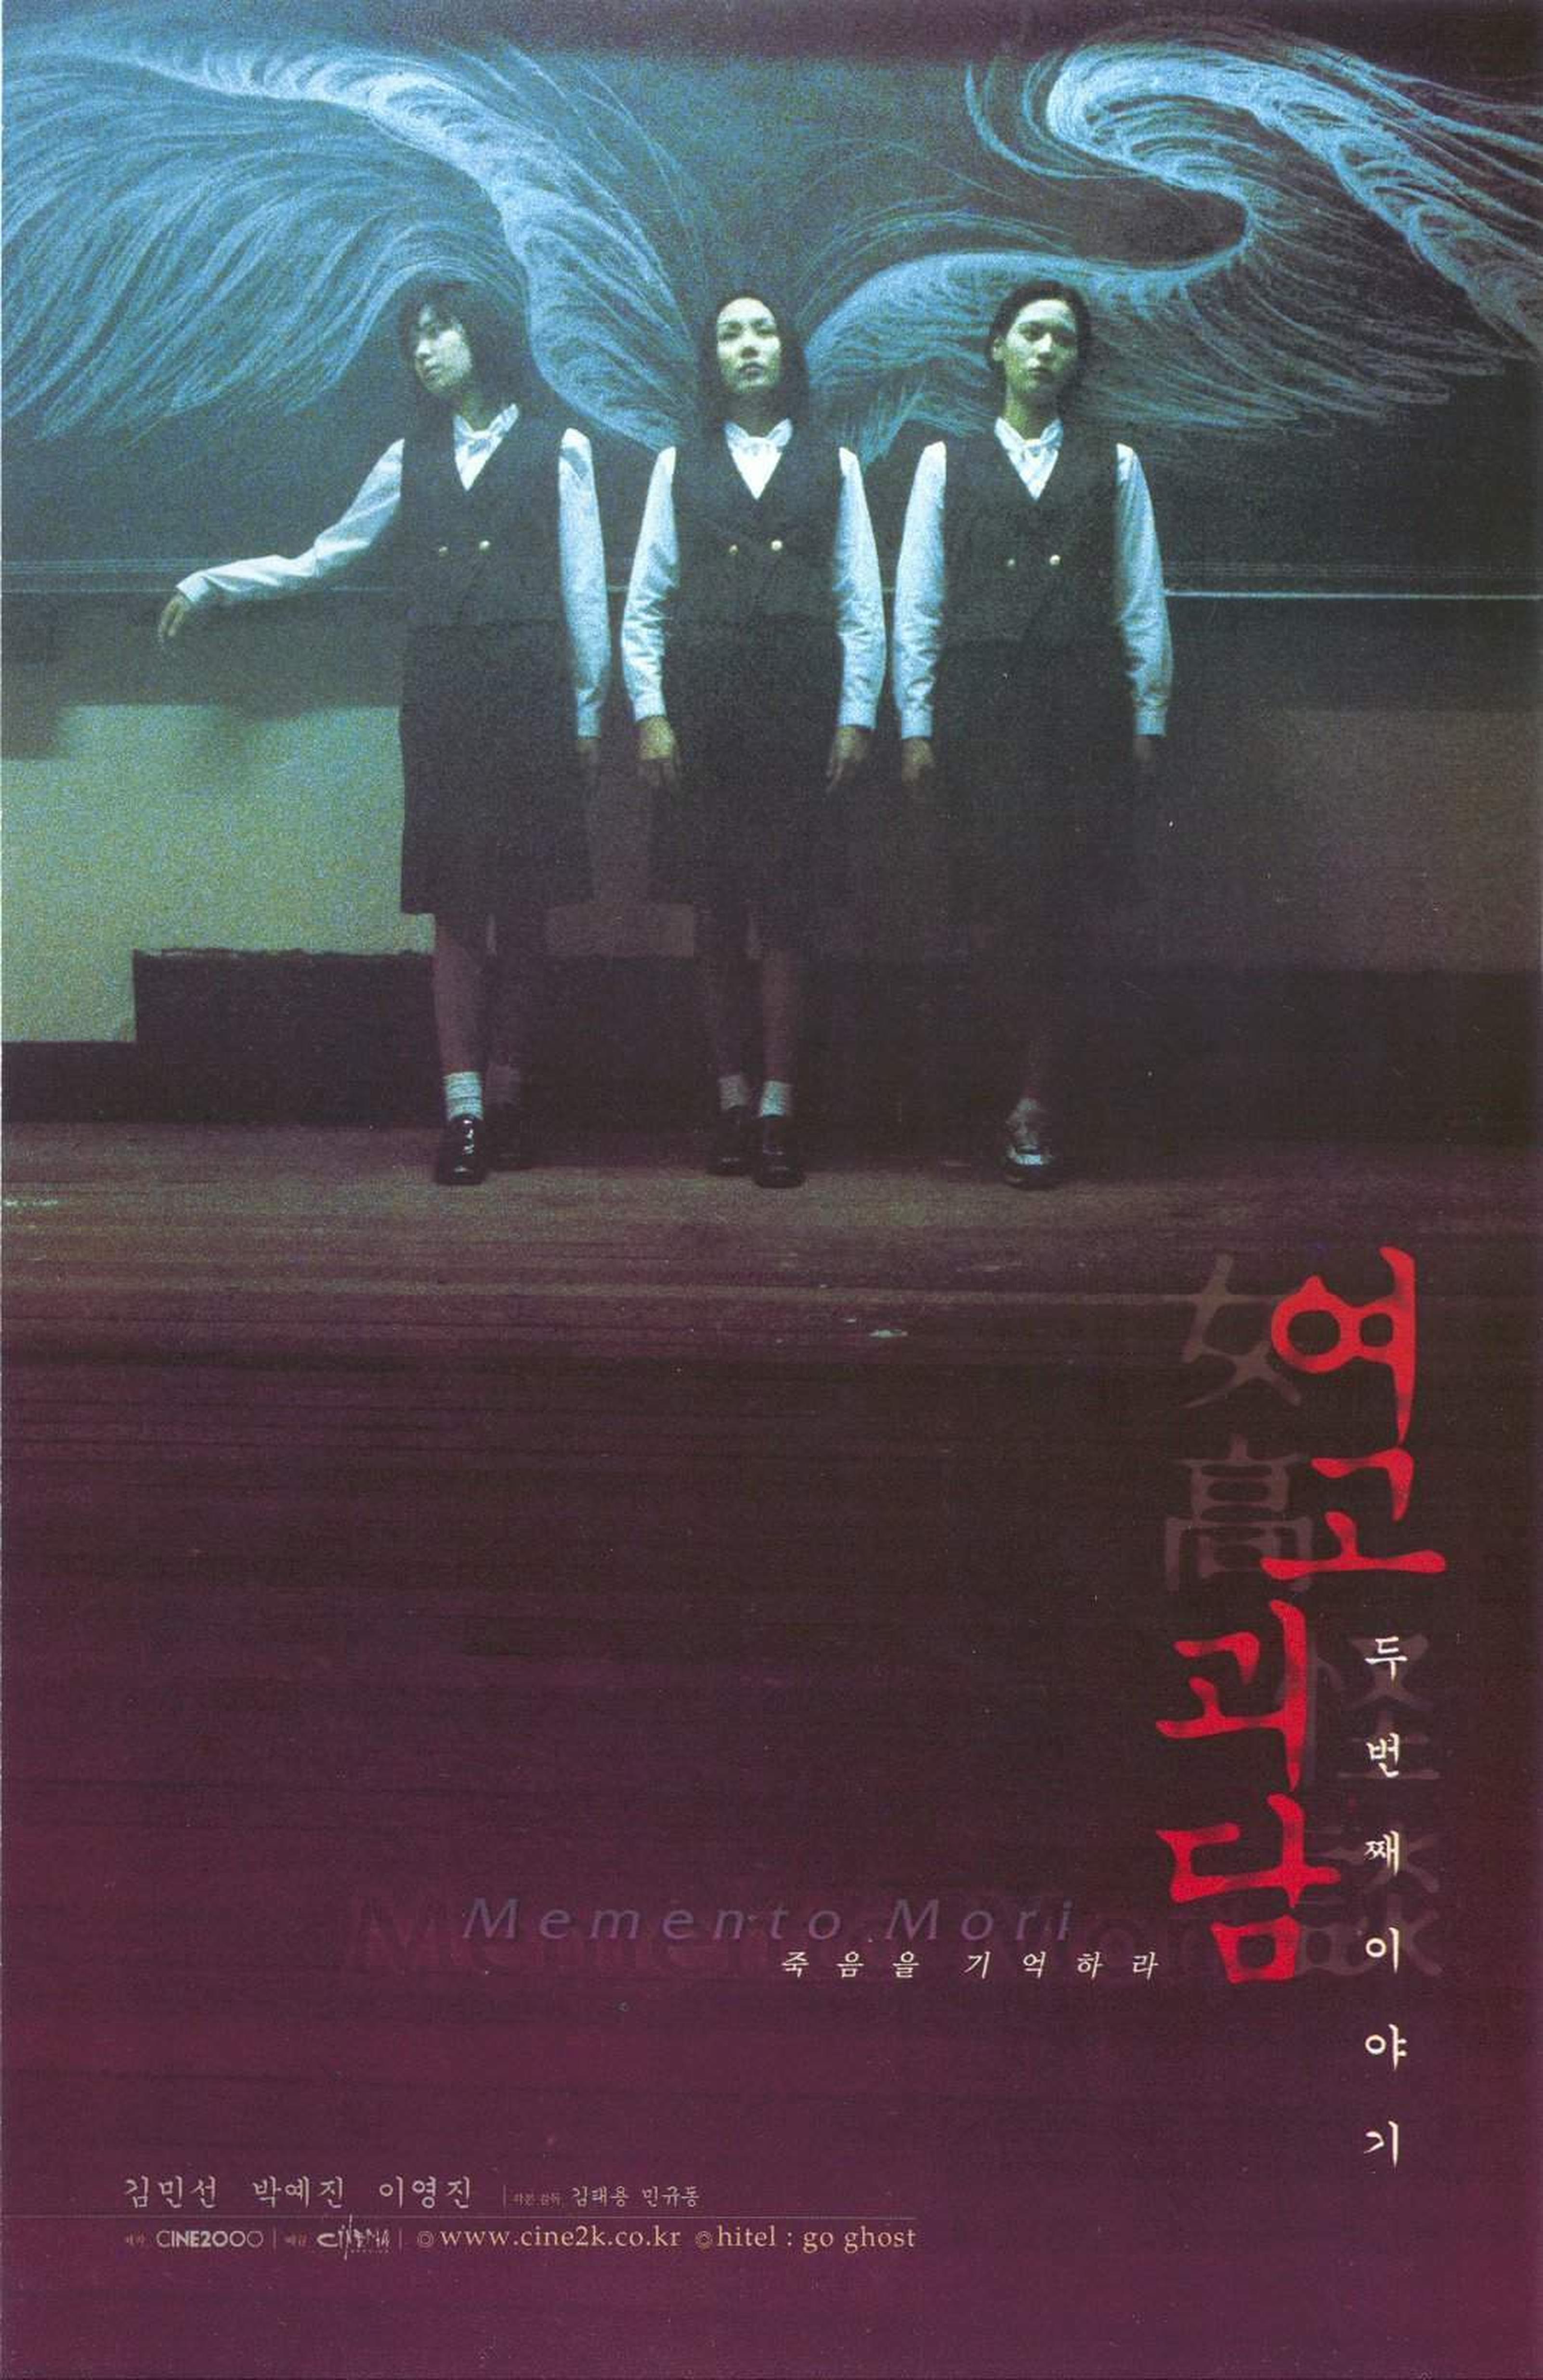 【1990-2000】《女高怪谈2》（1999）导演金泰勇、闵奎东。本榜单上唯一的一部恐怖片，甚至《蔷花红莲》都没能入围。影片中的女同志内容备受争议，在最终版中许多戏份和情节都遭到删剪，留下的只有若仙和诗韵同性接触的几抹淡淡的痕迹。